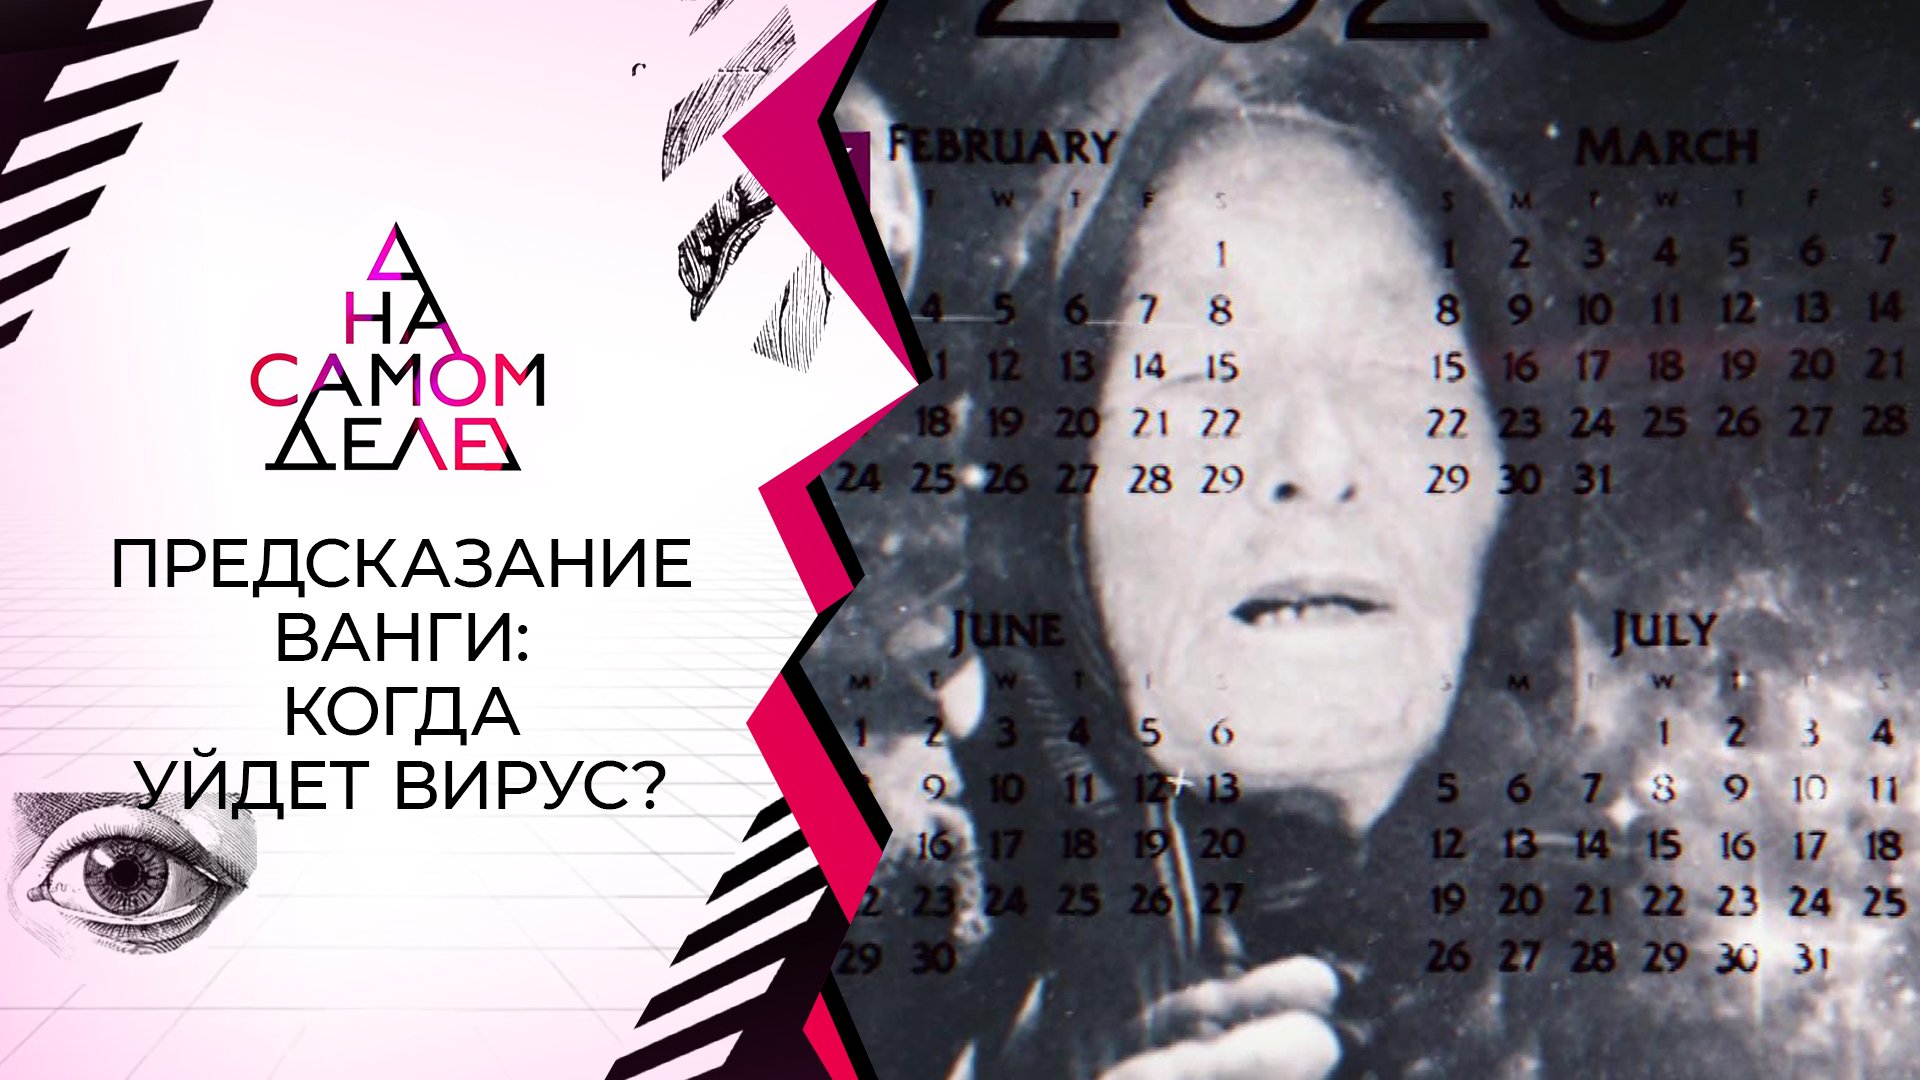 ТВ-шоу "На самом деле" 2022: актеры, время выхода и описание на Первом канале /